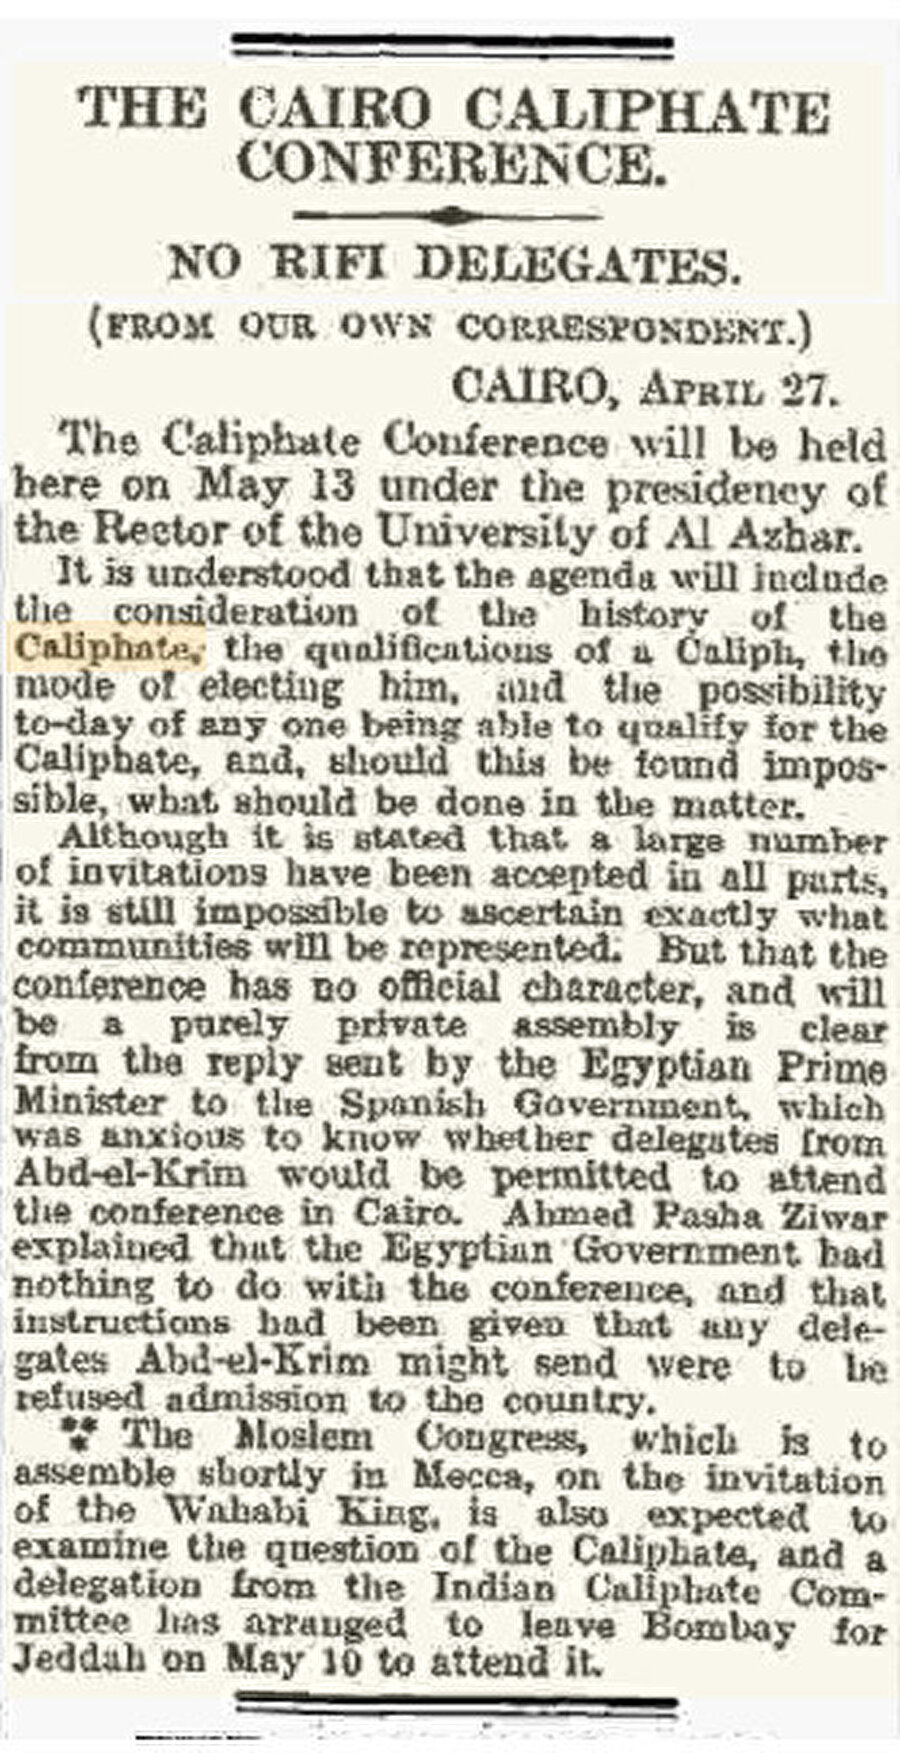 The Times’ın 28 Nisan 1926 tarihli nüshasında yer alan bir haber, Ezher Şeyhinin liderliğinde düzenlenecek Kâhire Hilâfet Konferansı’nın 13 Mayıs tarihinde yapılacağını söylüyordu. 1924 yılında Türkiye’de hilâfetin kaldırılması İslâm dünyasında bir şok etkisi meydana getirmiş, bu açığın doldurulması için teşebbüsler olmuştu ki herhangi bir netice elde edilemeyen Kâhire Hilâfet Konferansı da bunlardan biriydi.